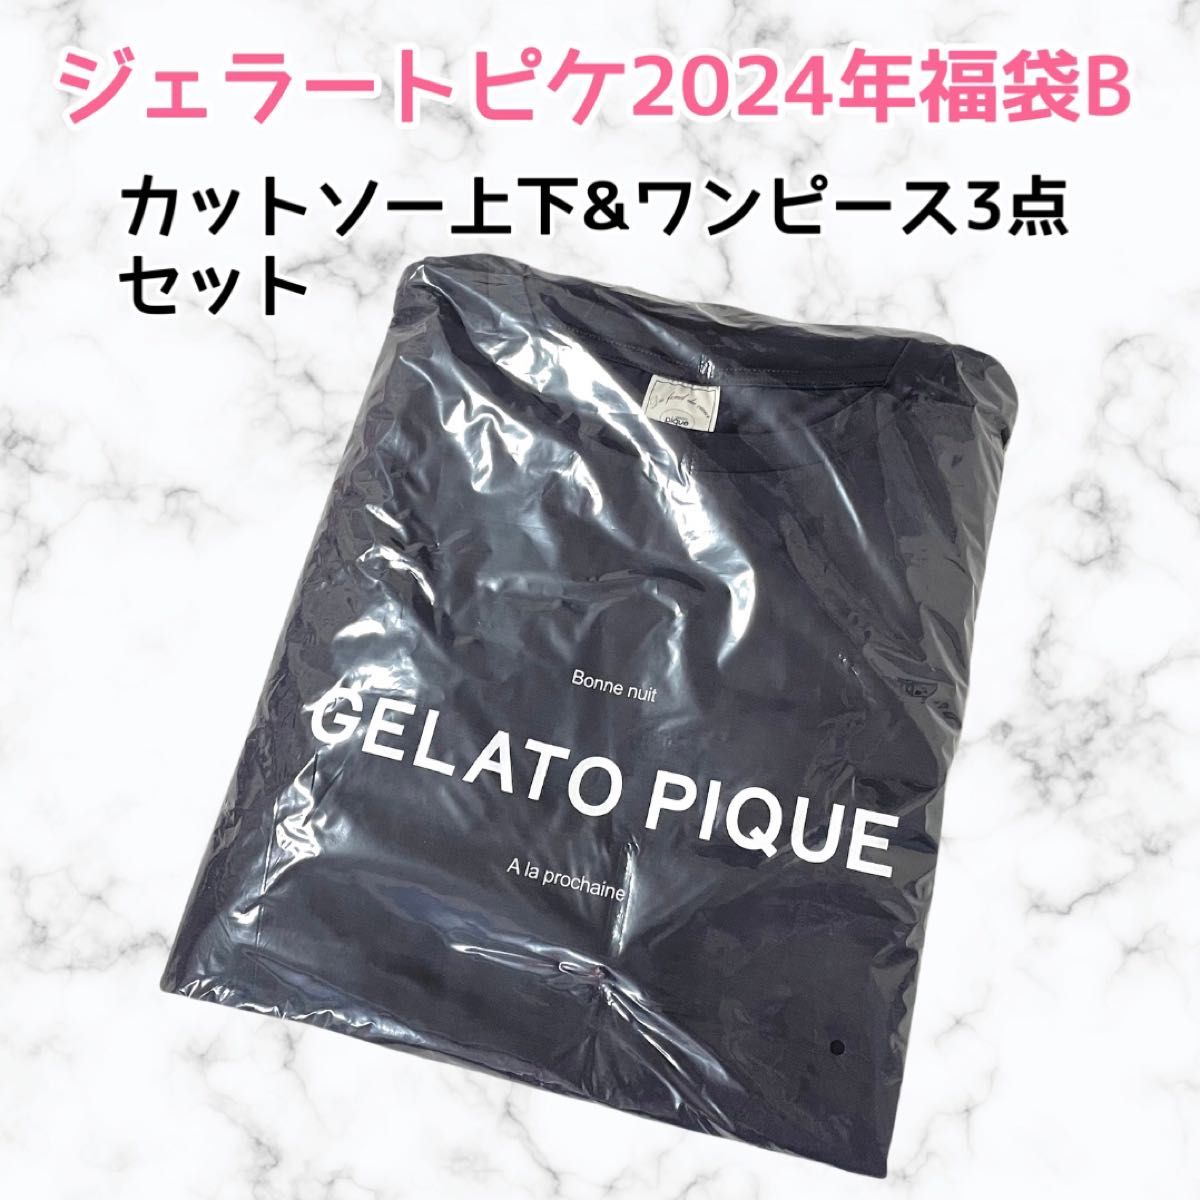 新品★未使用 ジェラピケ ジェラートピケ 福袋B 2024 gelato pique ハッピーバッグ 3点セット ロンT パンツ